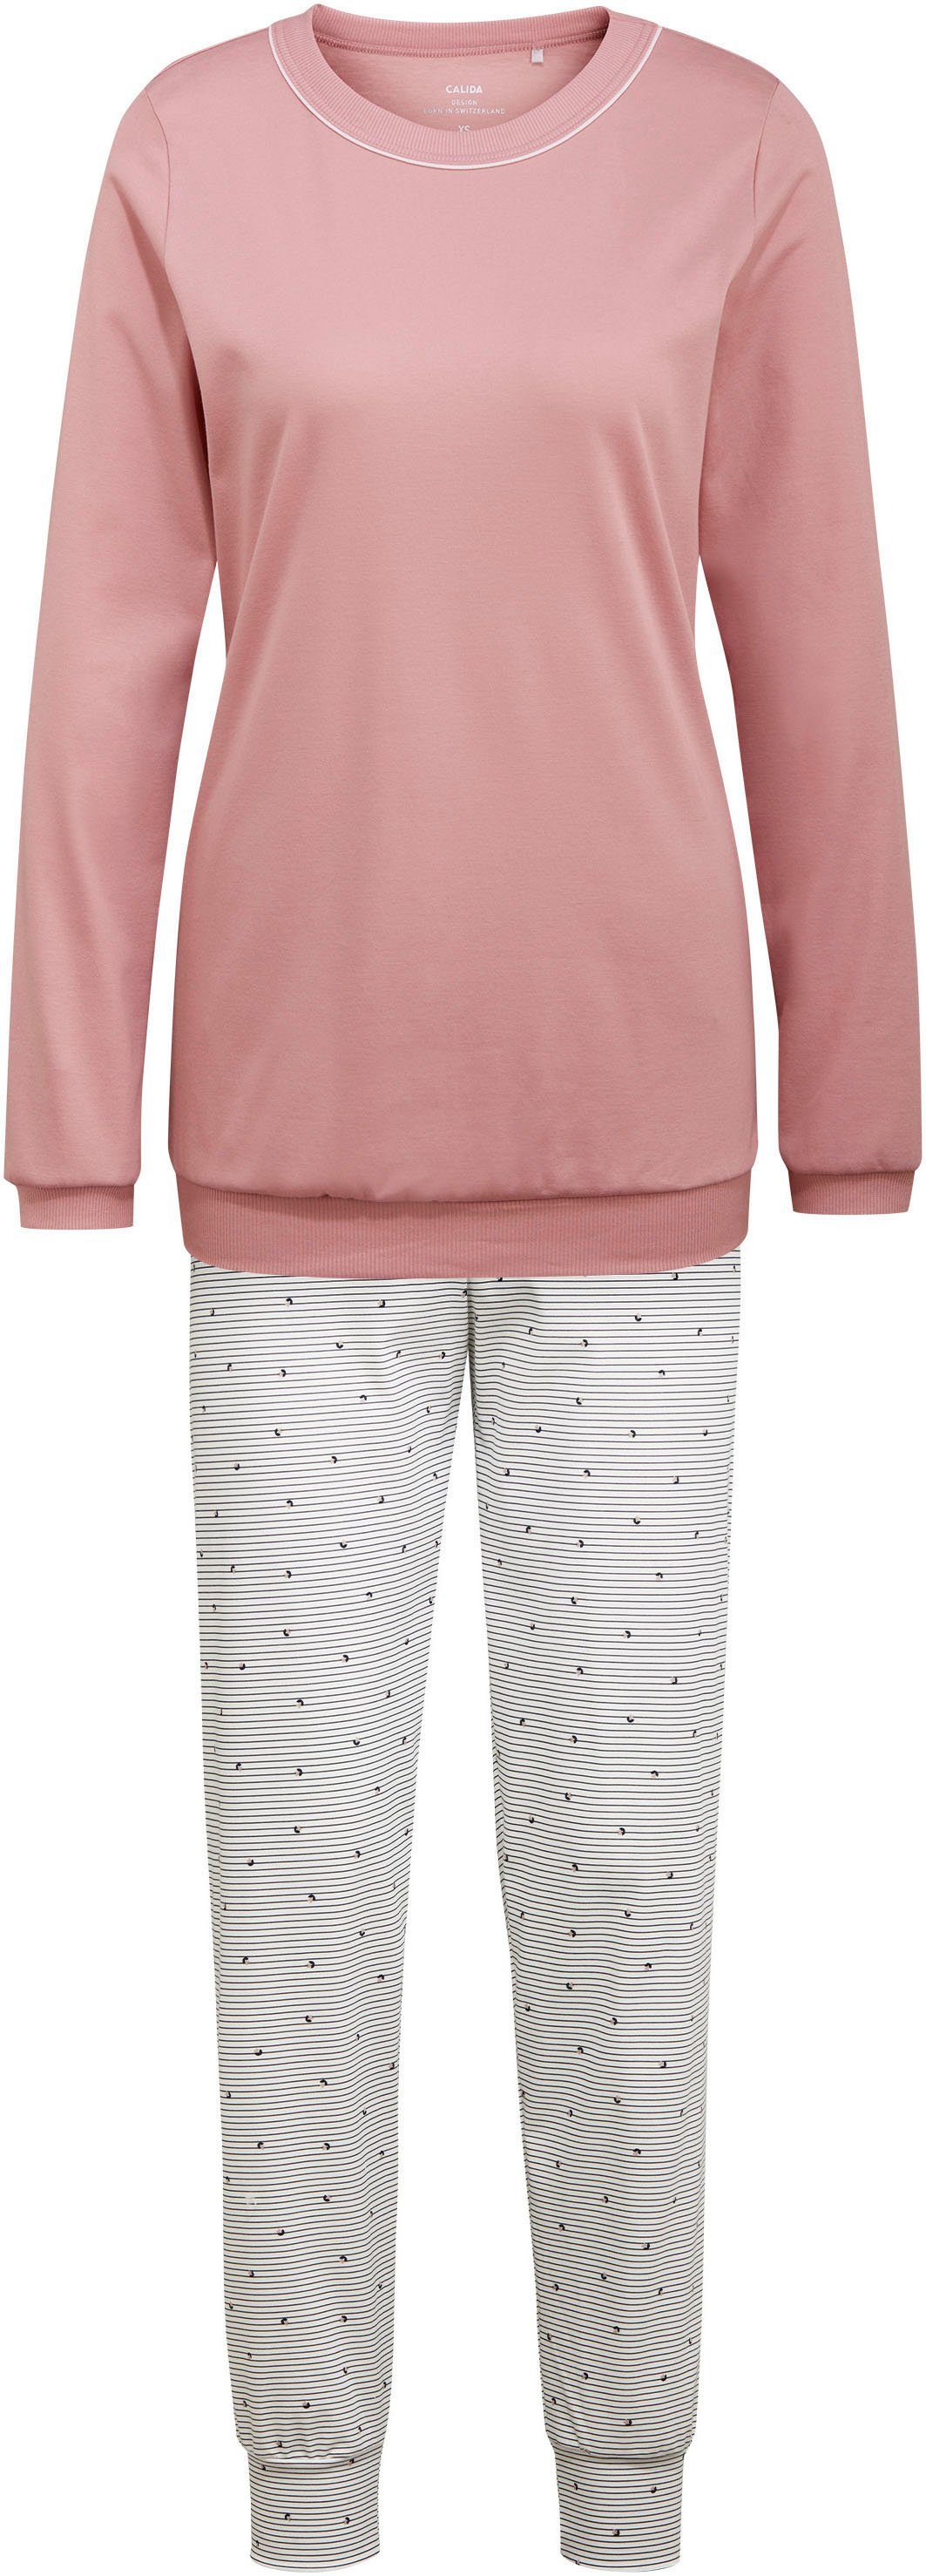 Blümchen rose Sweet auf Bündchen-Pyjama, Streifen bud Hose feine kleine Schlafanzug Dreams CALIDA der und